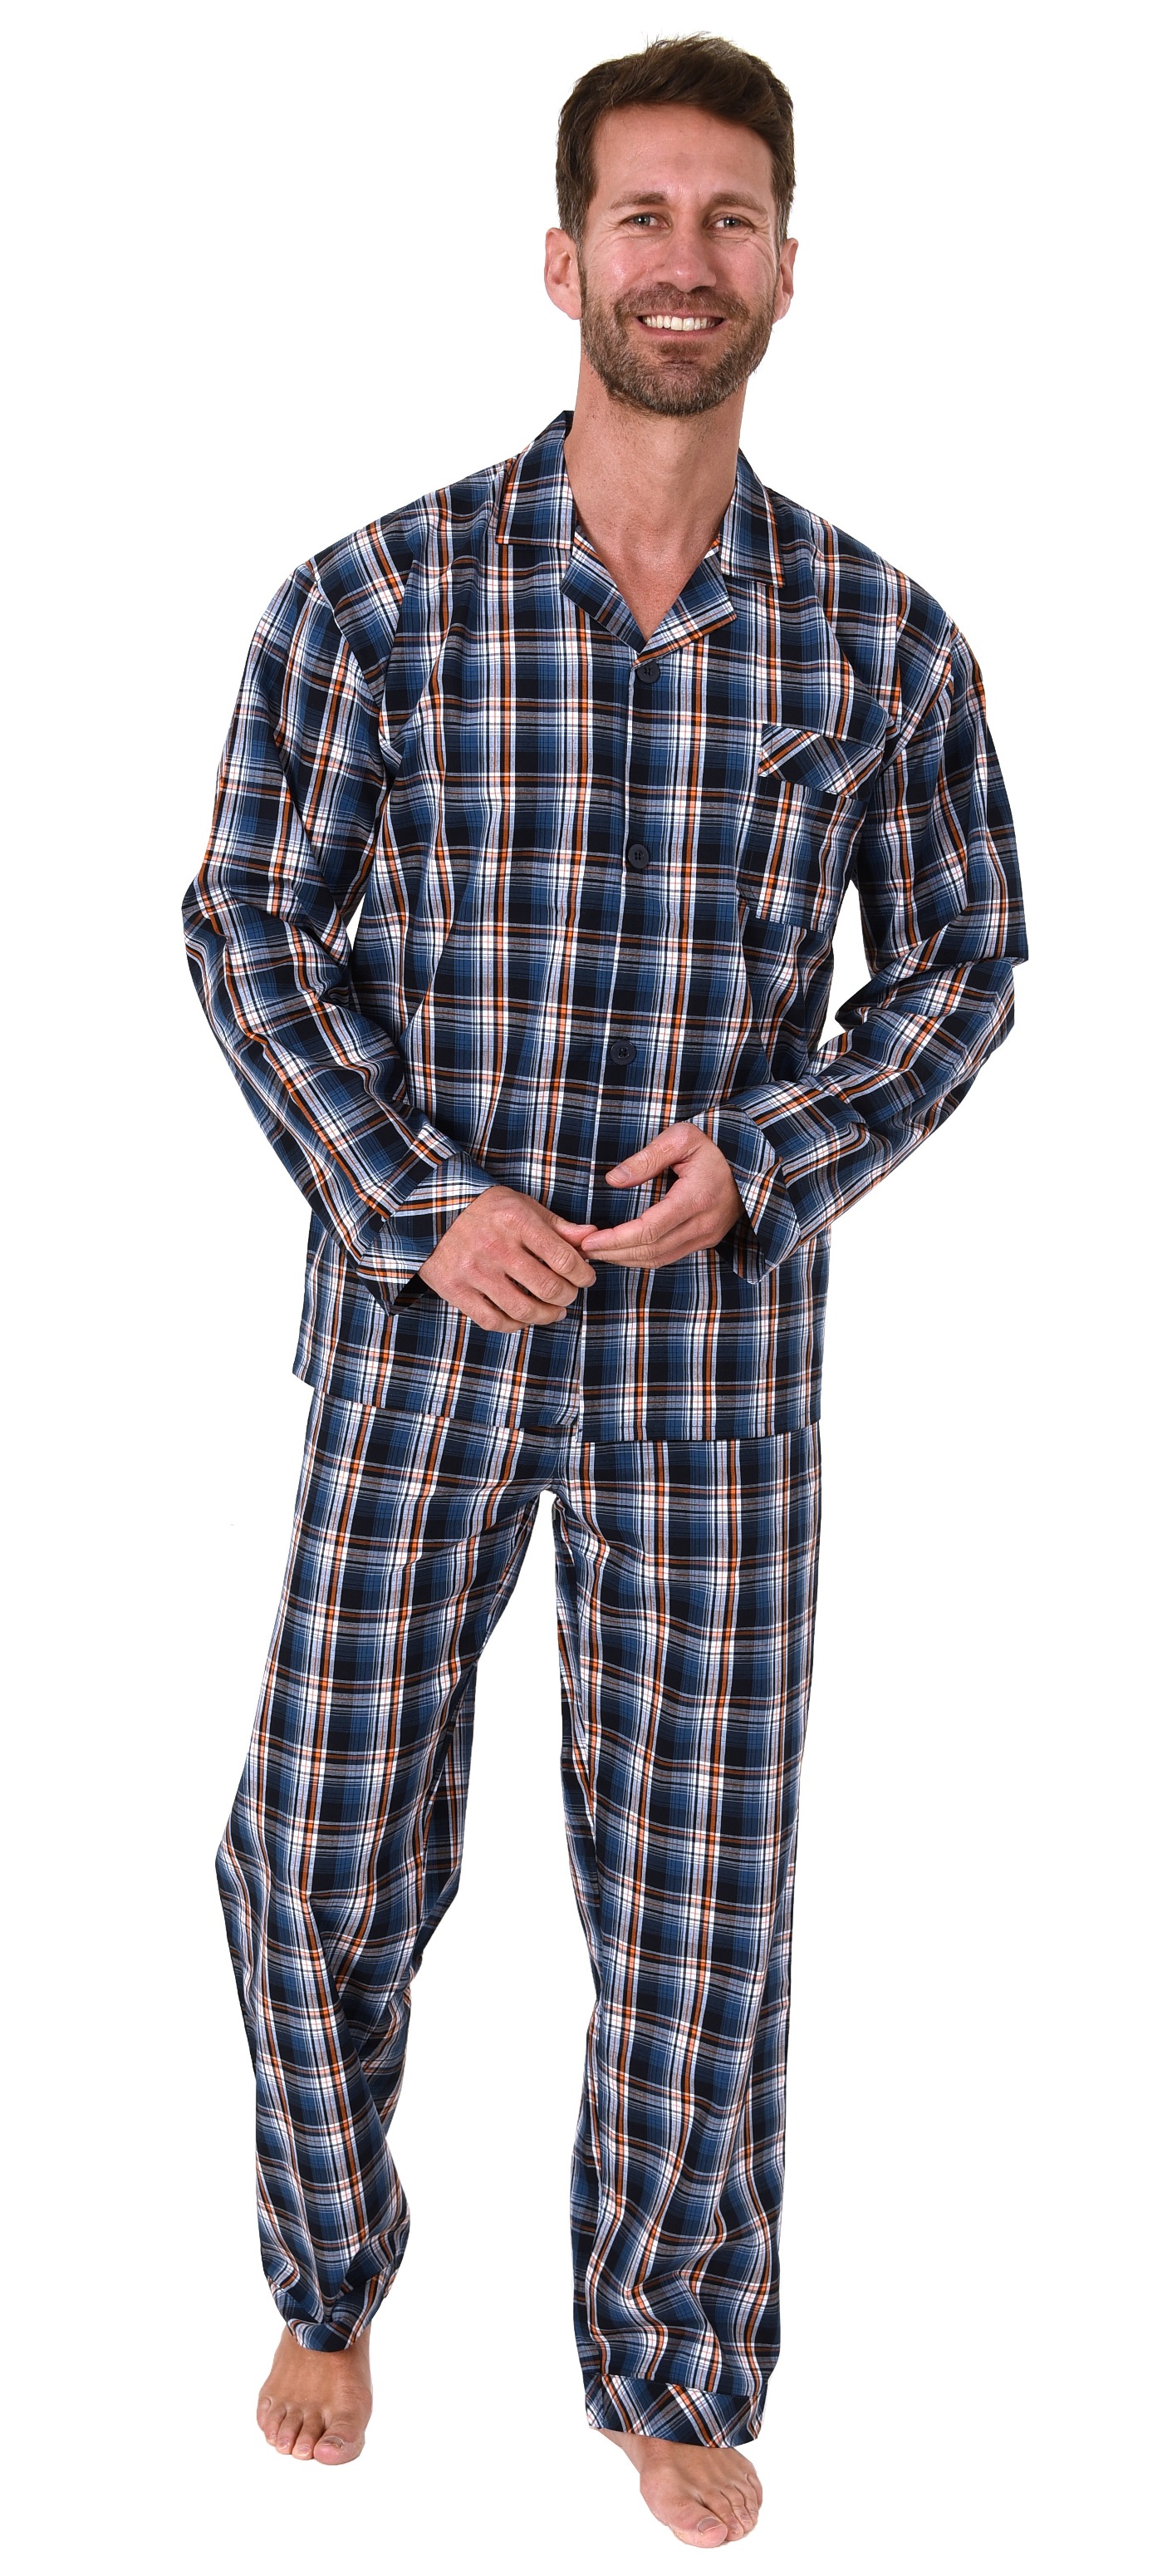 Edler Normann Herren Pyjama Schlafanzug lang mit B/ündchen 70-191 101 90 542 auch in /Übergr/össen bis Gr